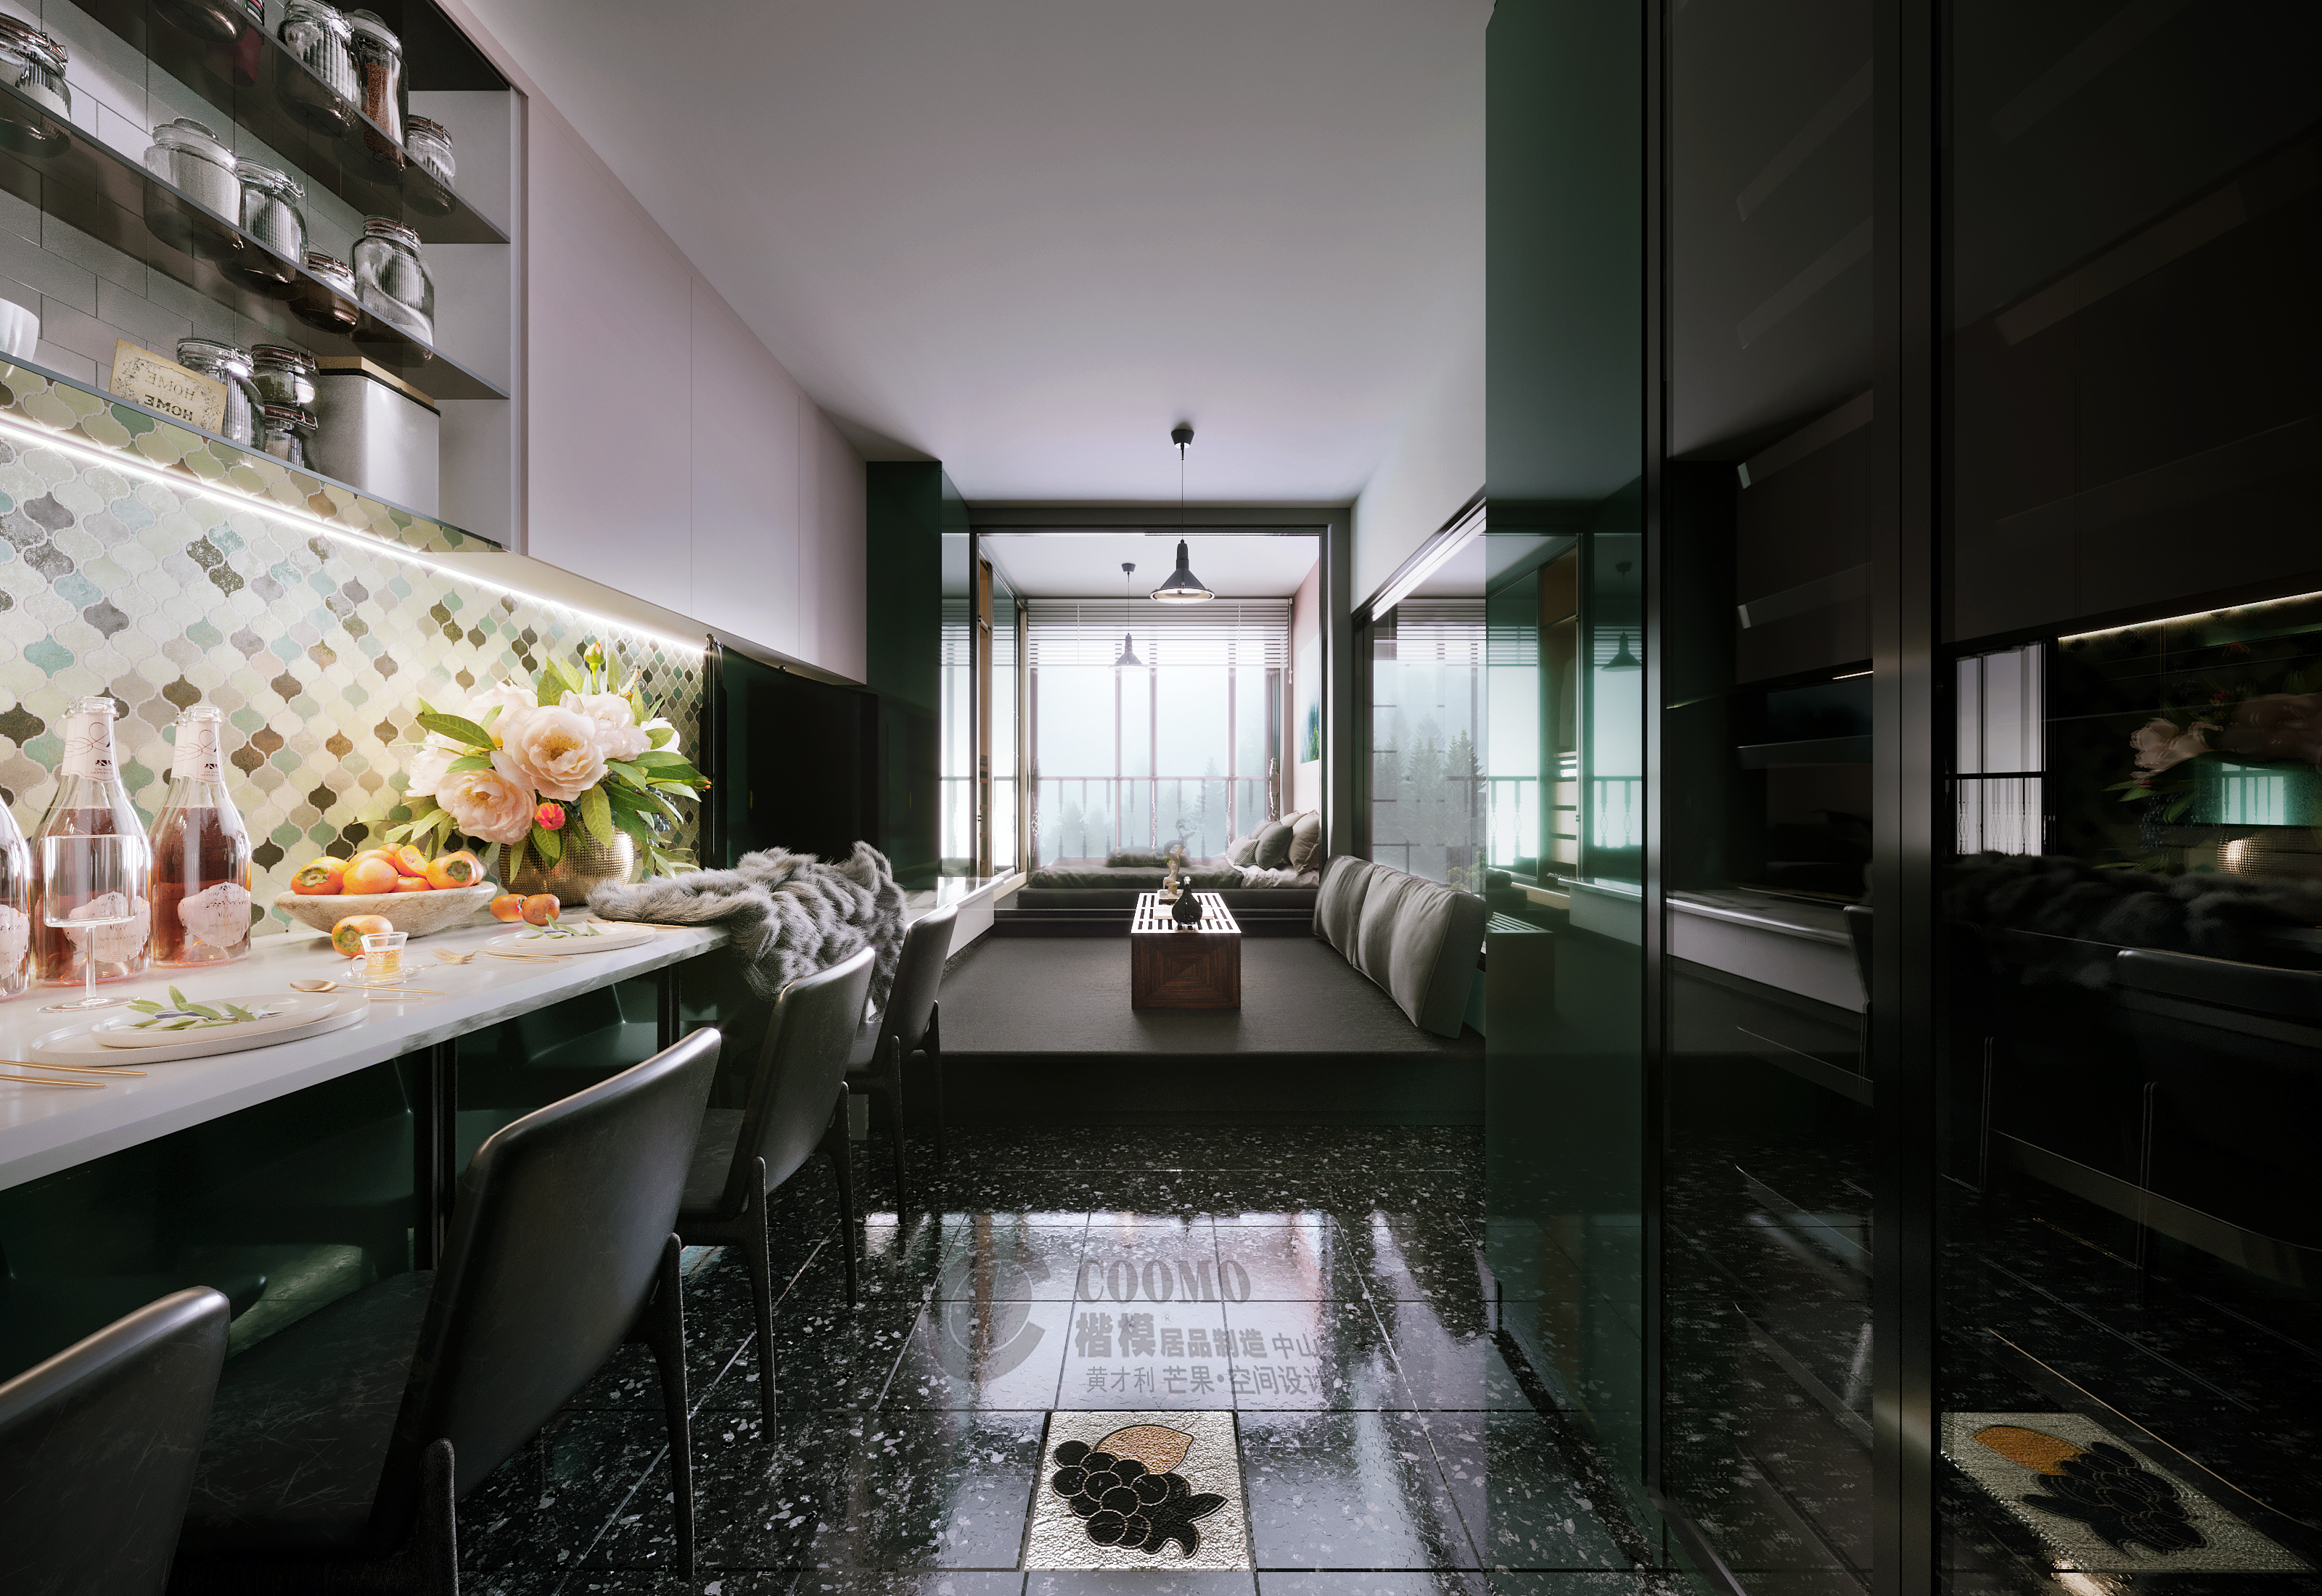 分享一个深圳南山小公寓设计